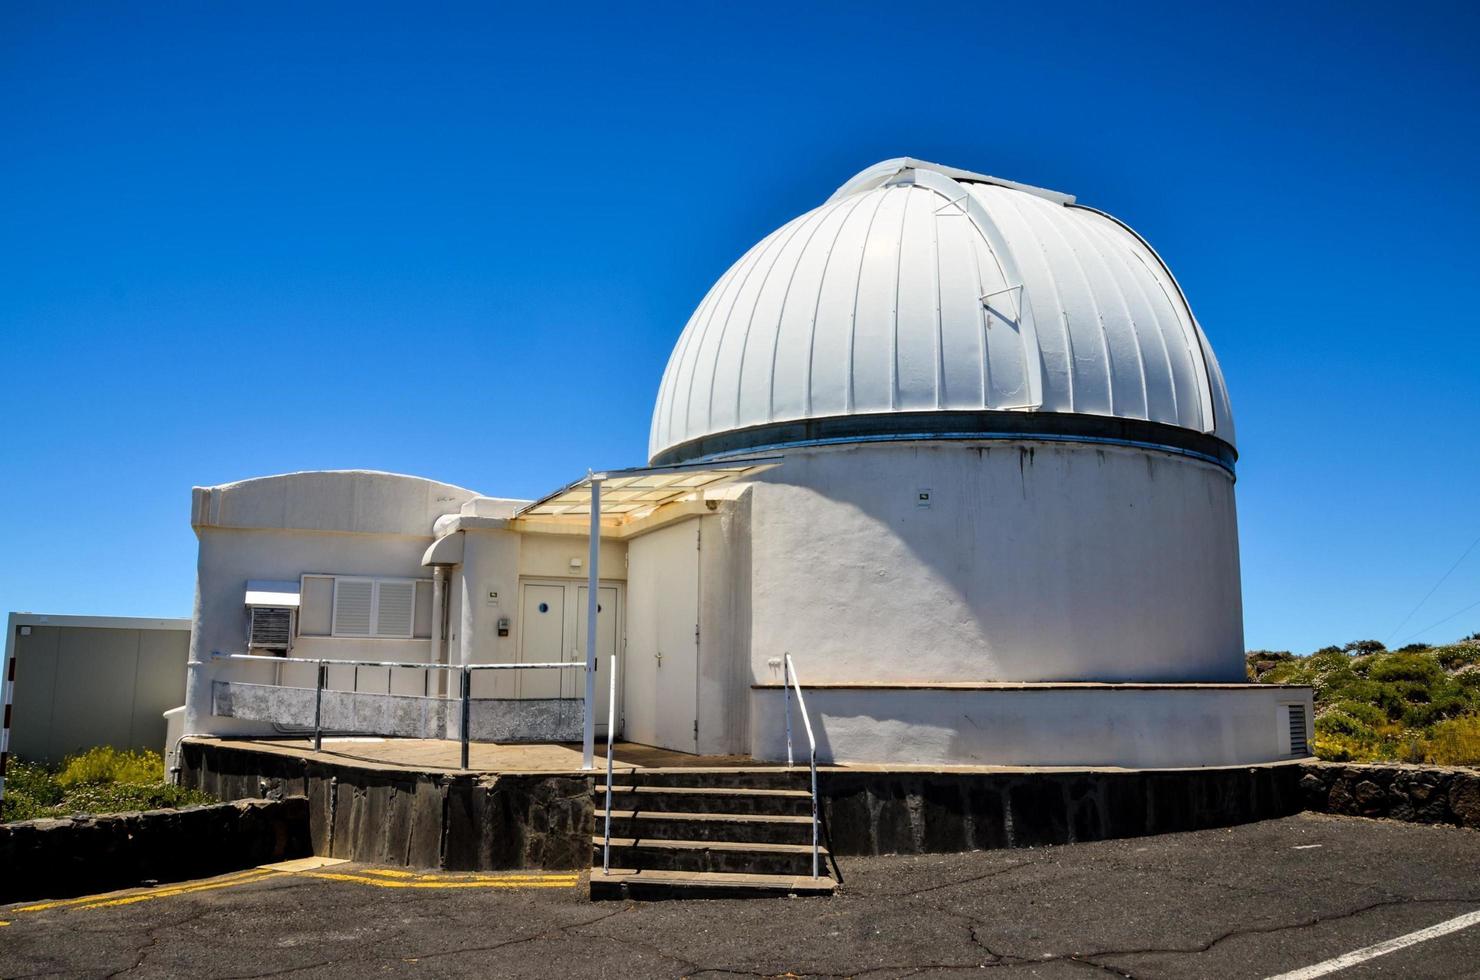 de teide observatorium i teneriffa, på de kanariefågel öar, cirka Maj 2022 foto